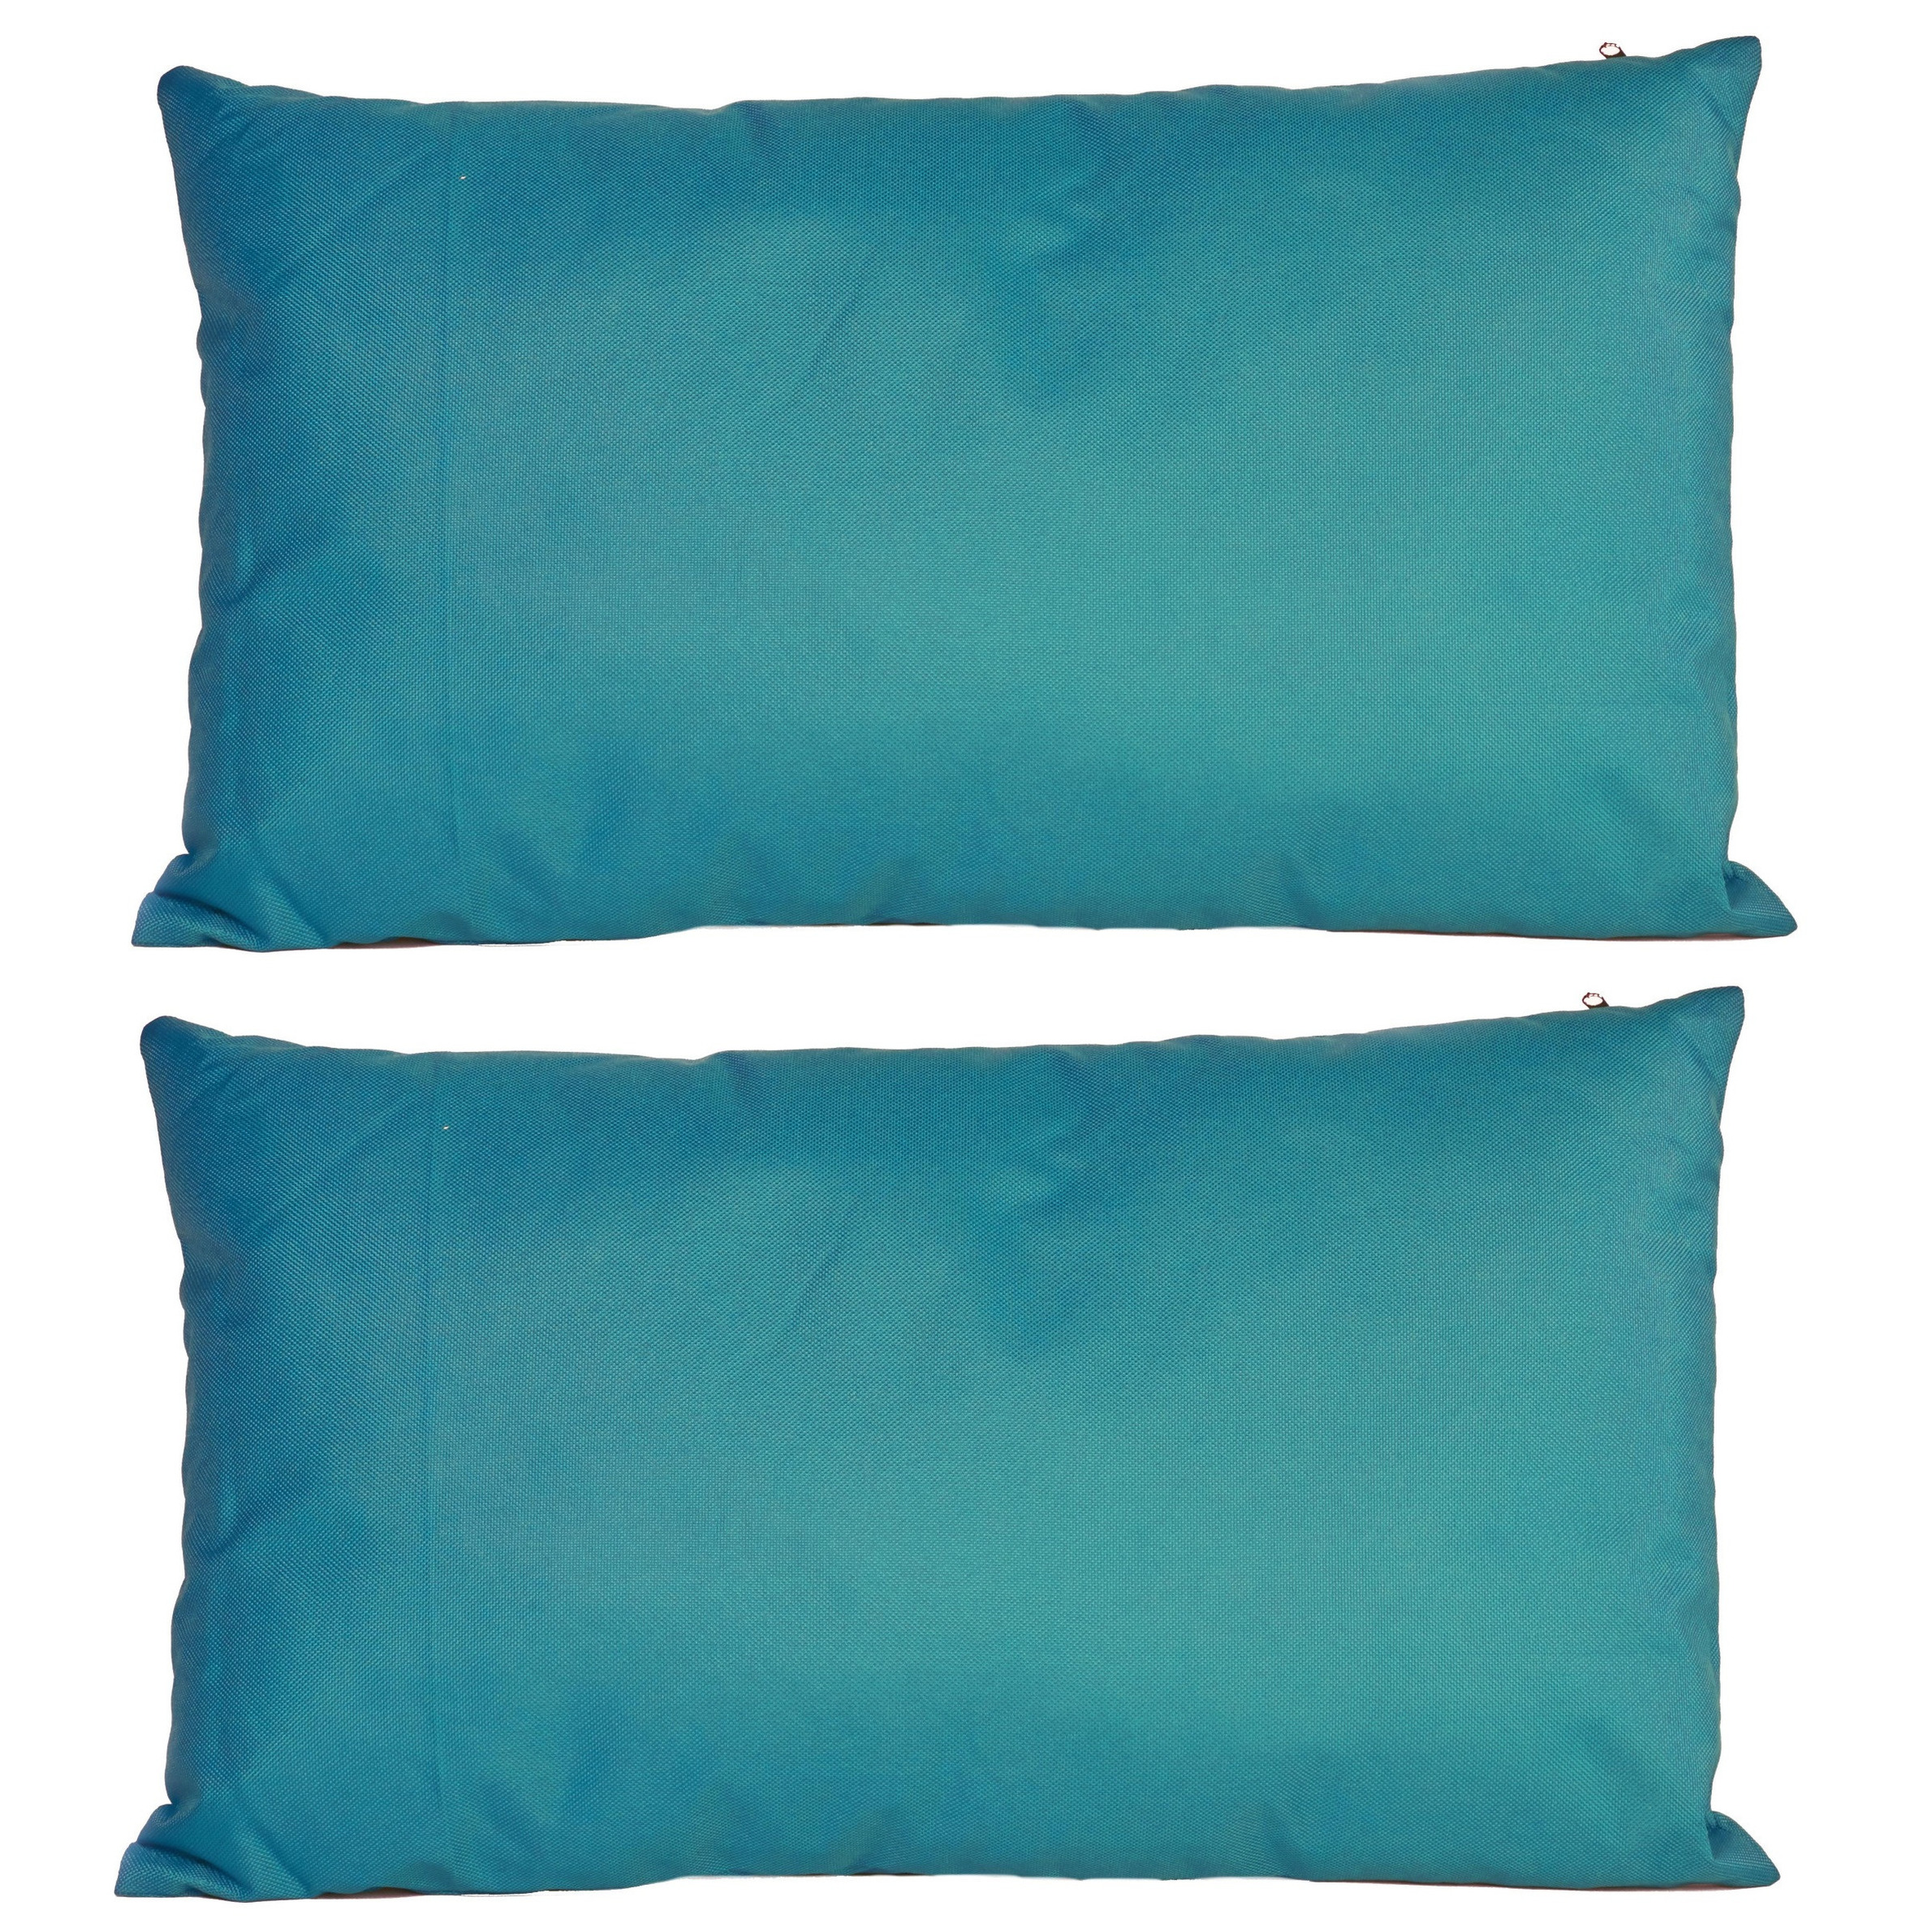 8x Bank-sier kussens voor binnen en buiten in de kleur petrol blauw 30 x 50 cm